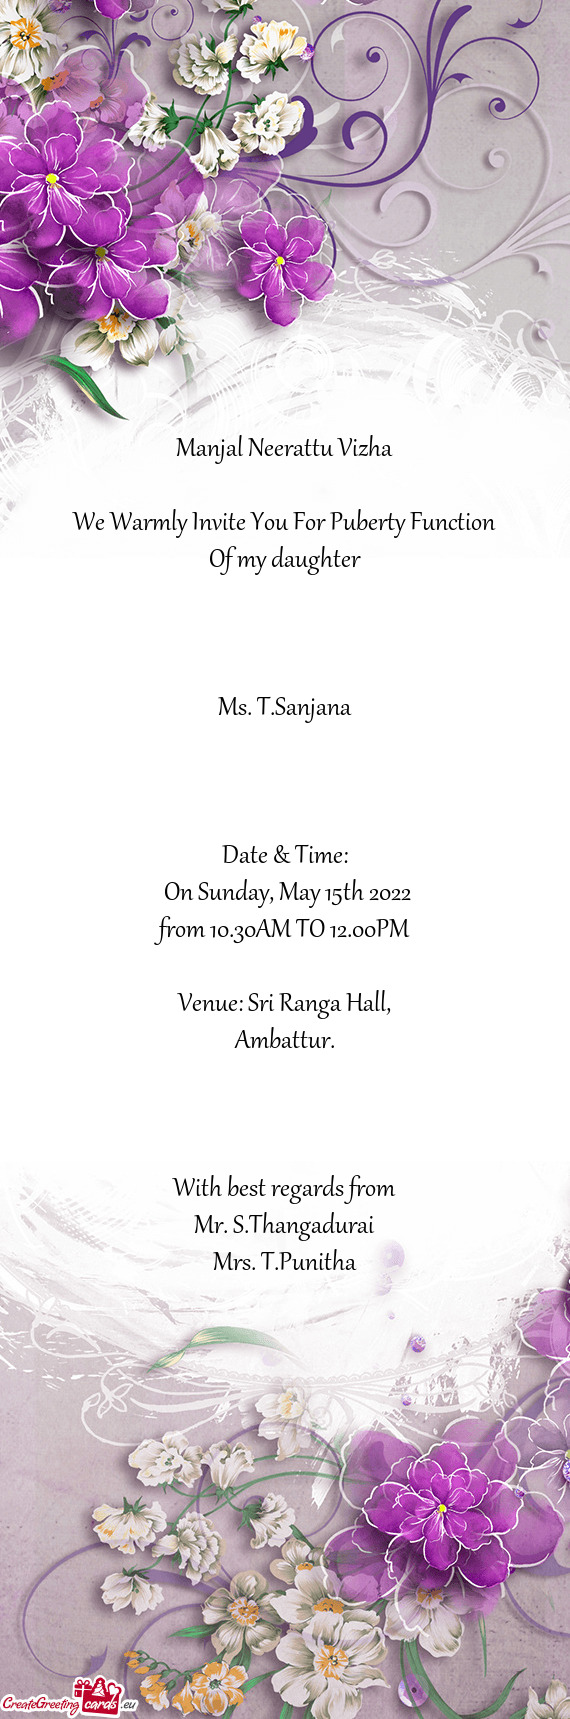 Venue: Sri Ranga Hall